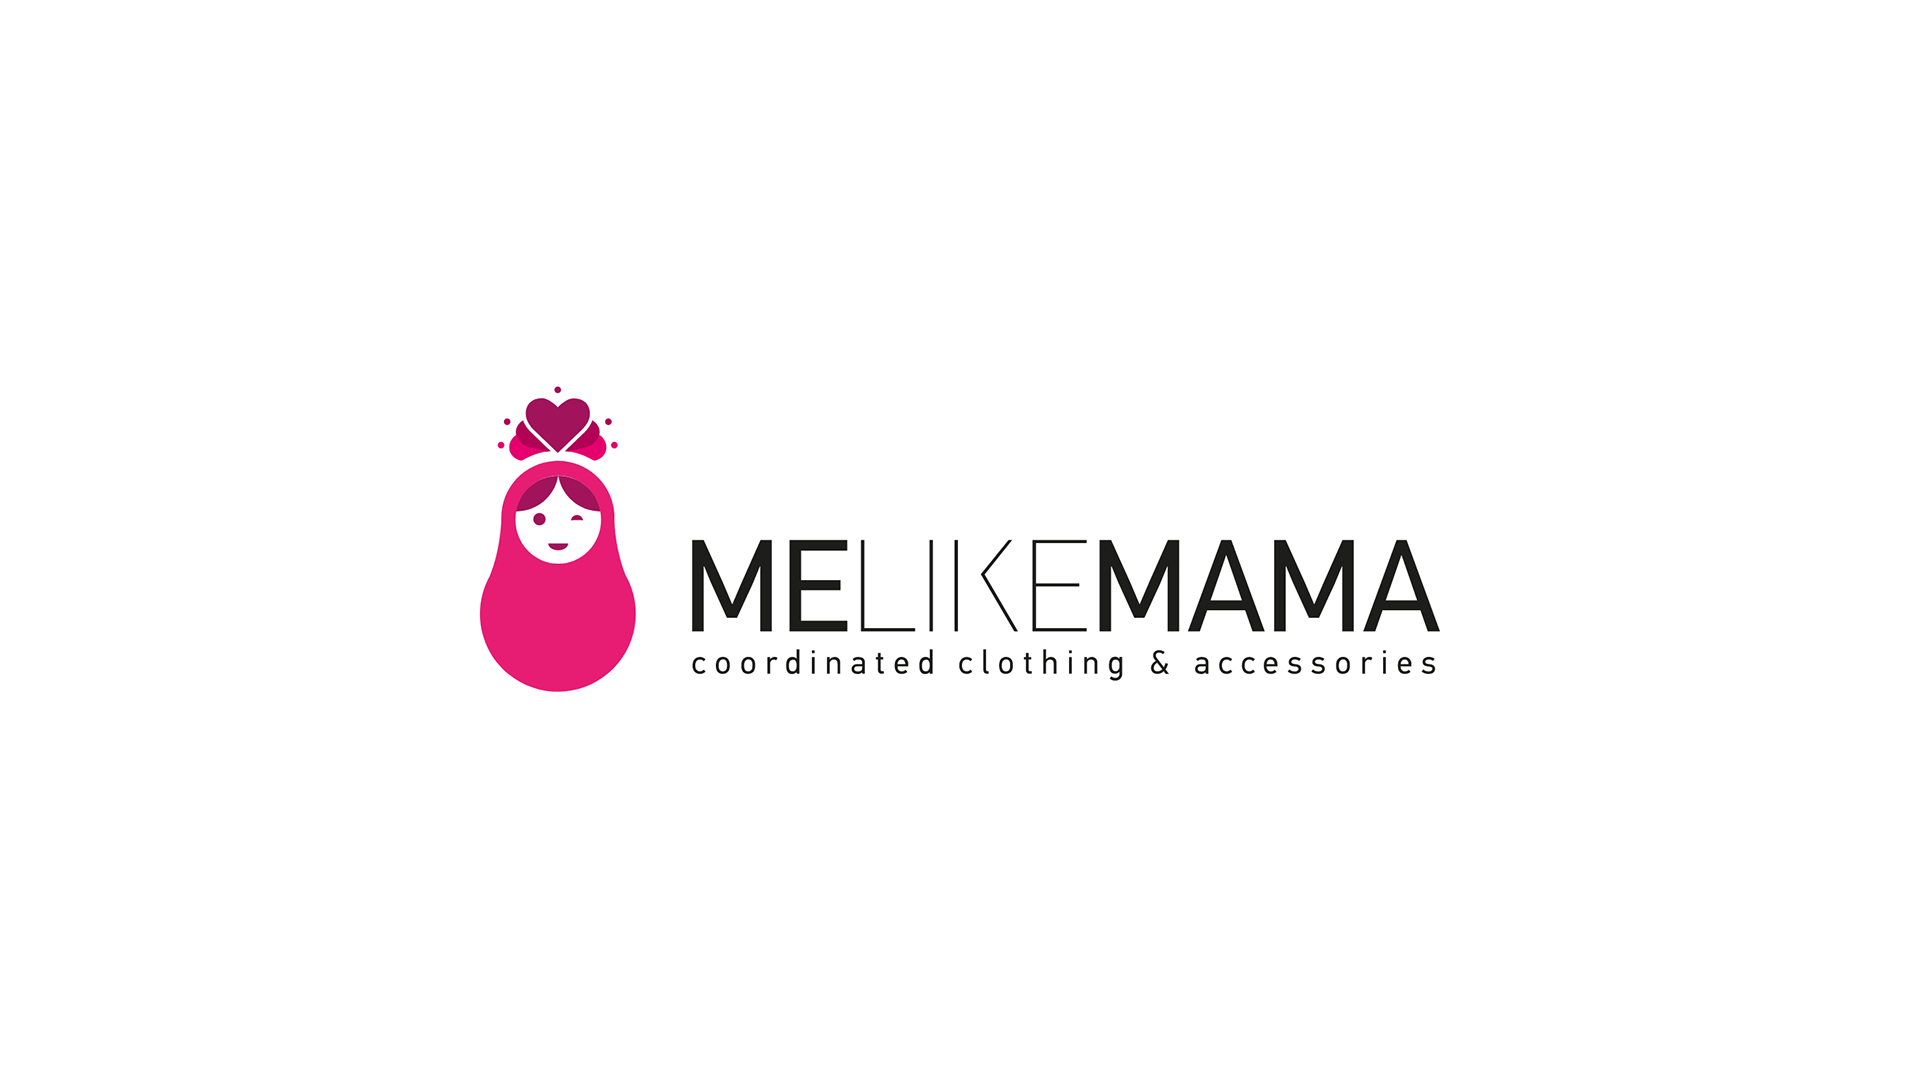 Me Like Mama - Logo